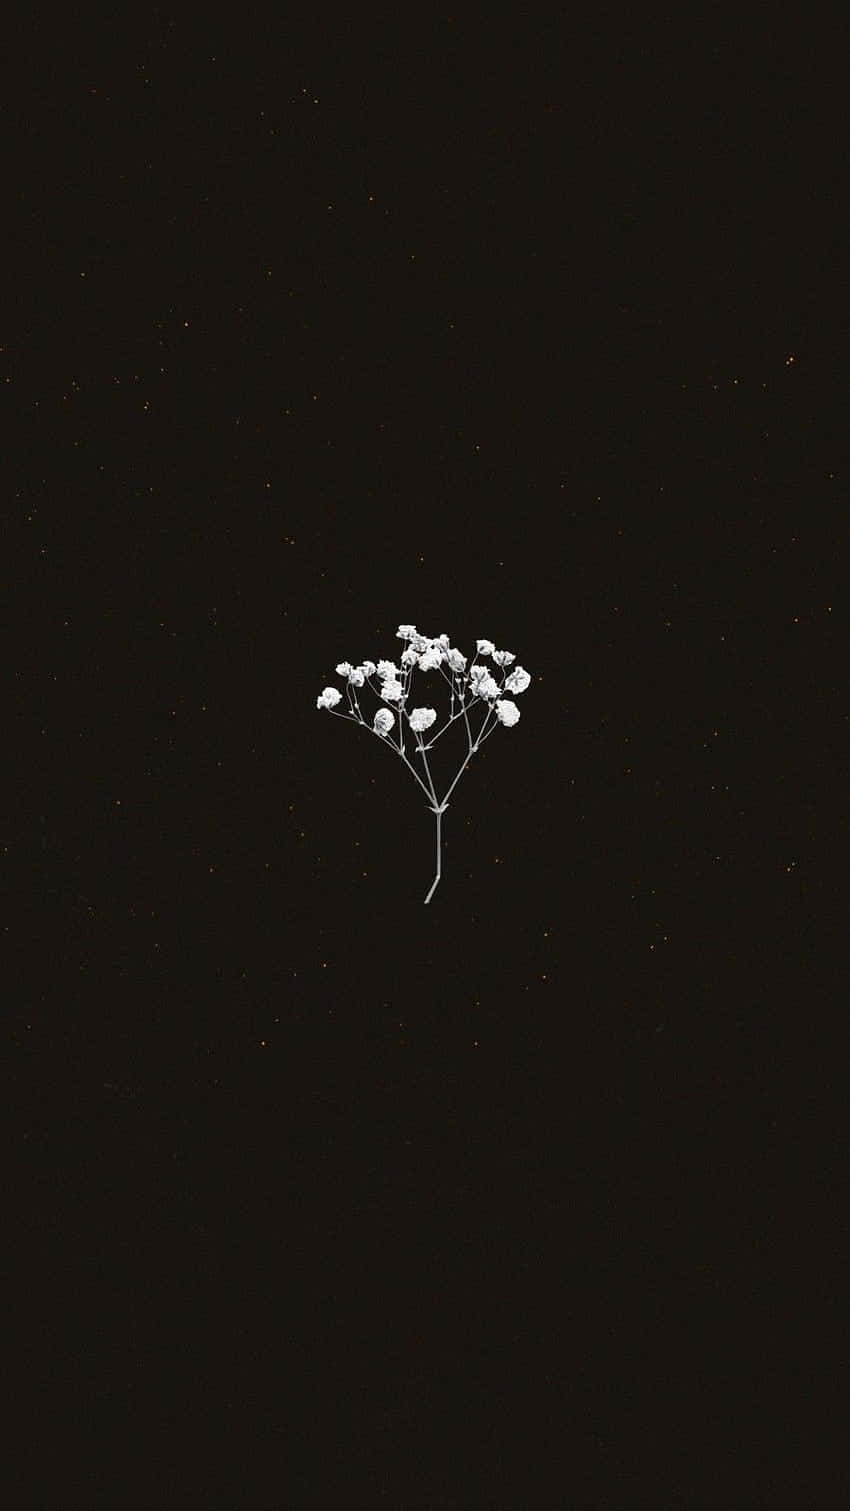 Minimalist Flower Against Dark Background.jpg Wallpaper